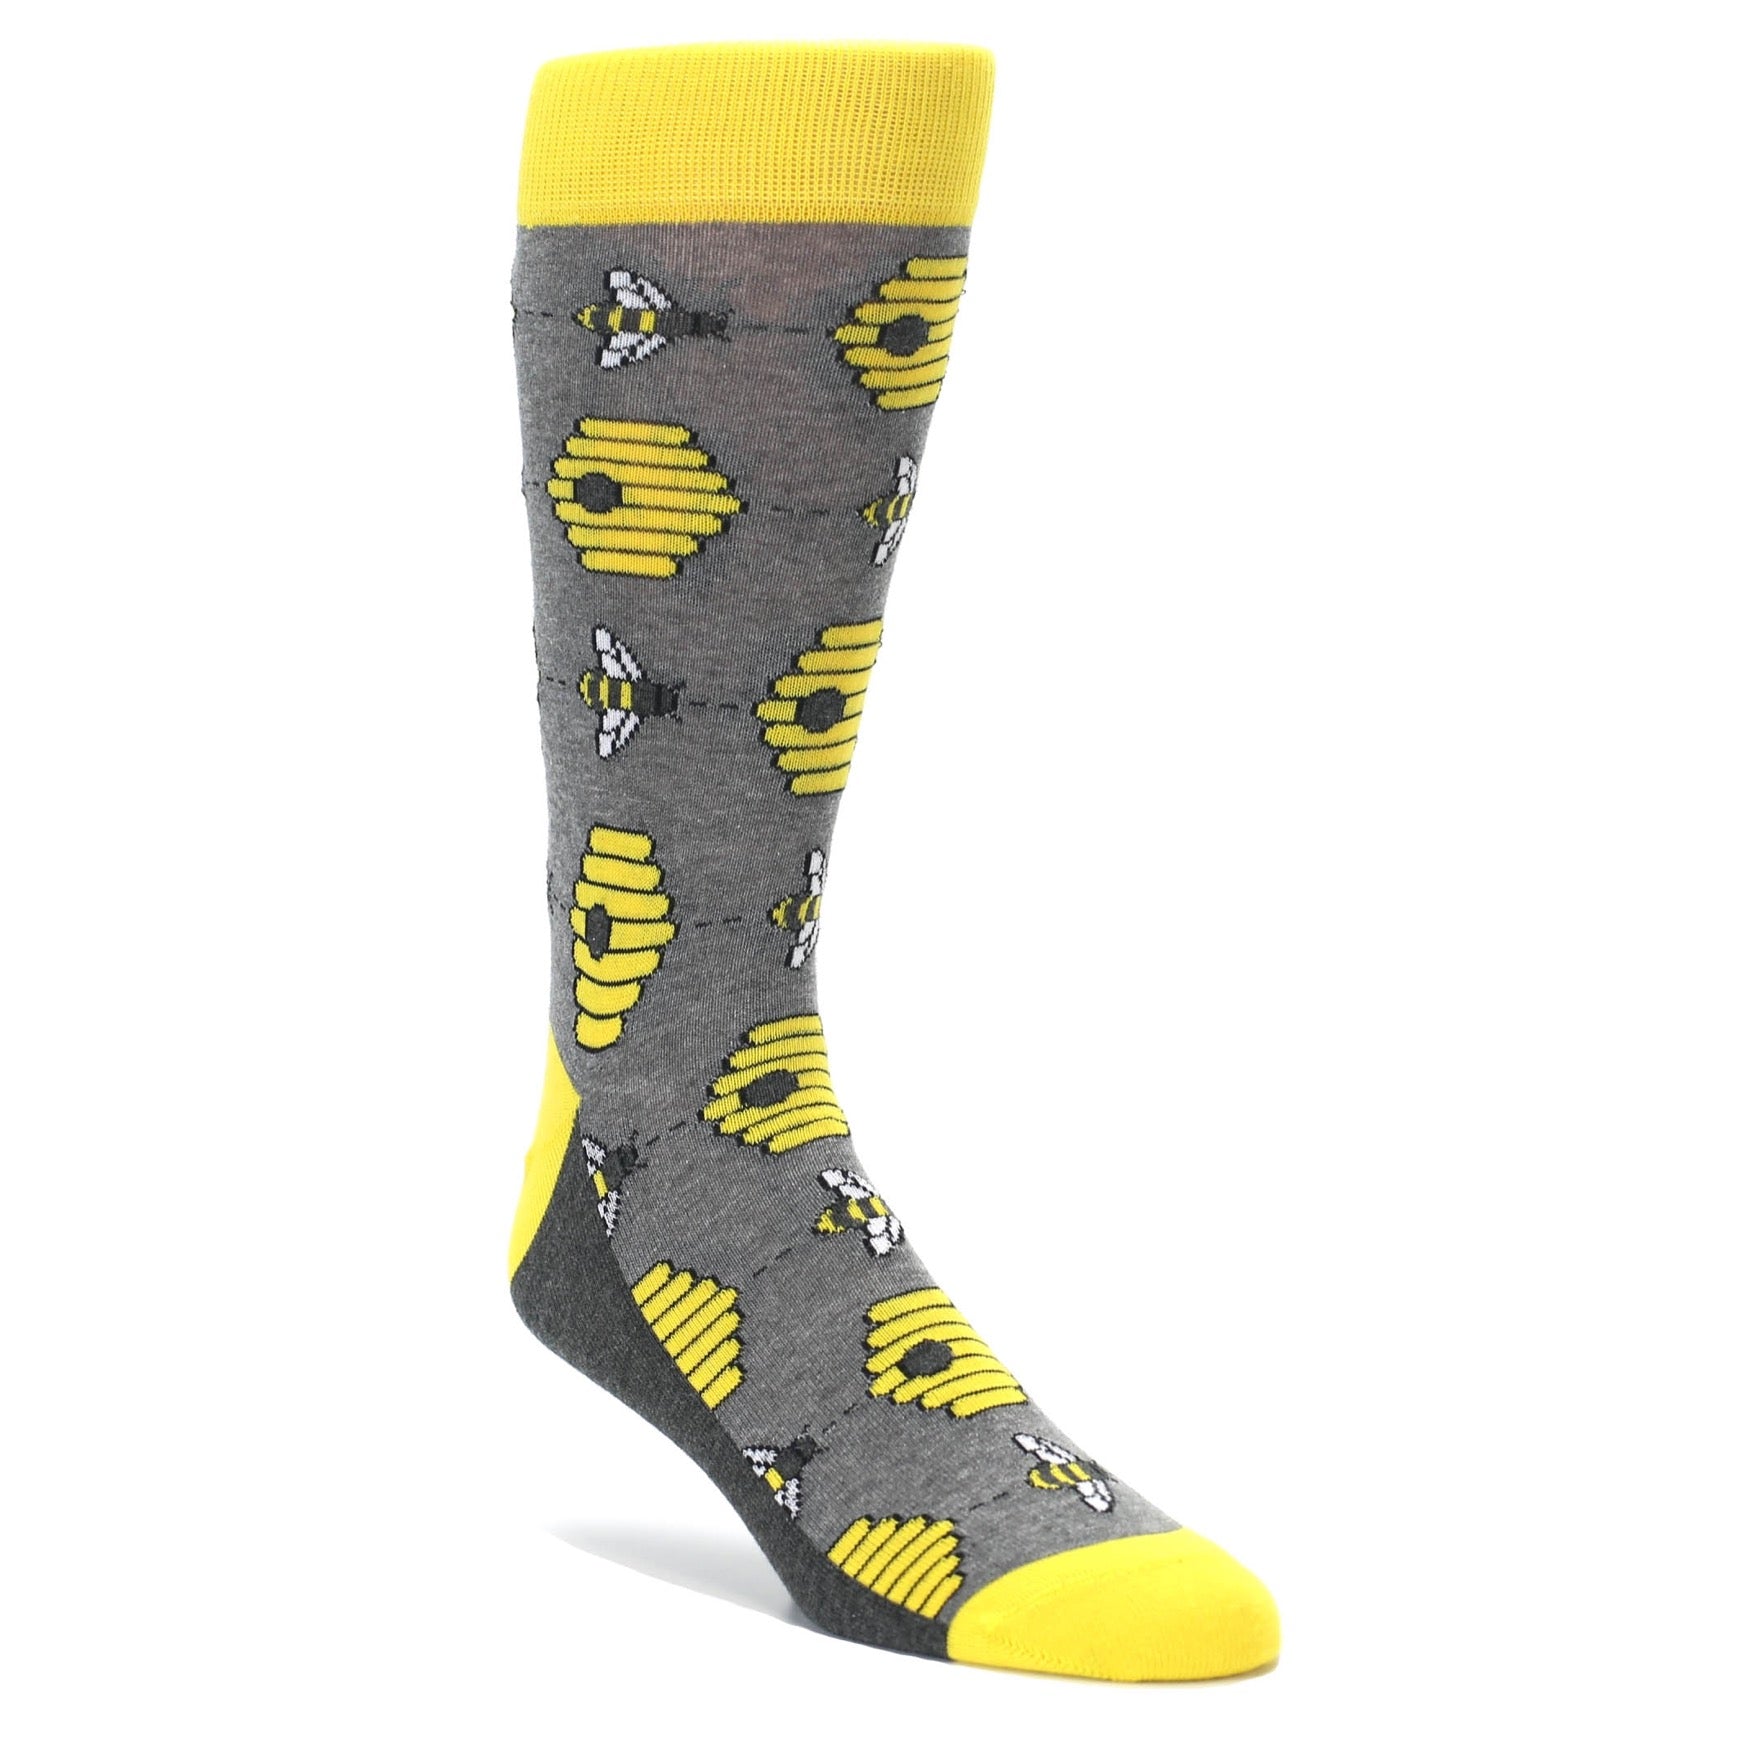 Honey bee socks for men by Statement Sockwear